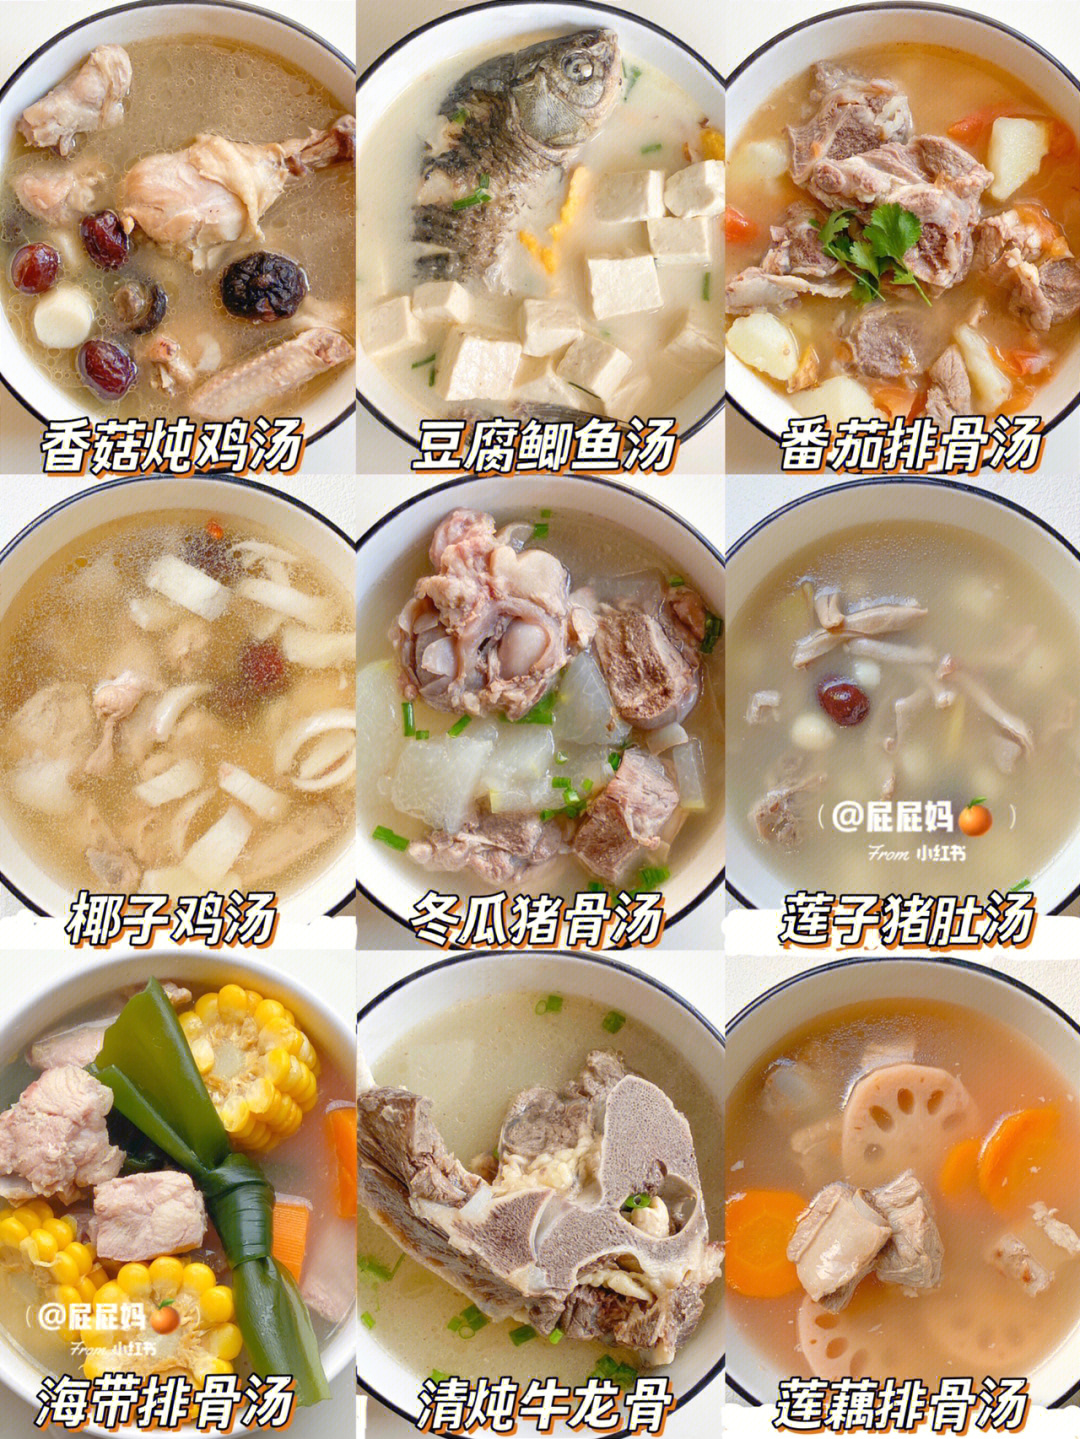 春季汤类菜谱大全图片